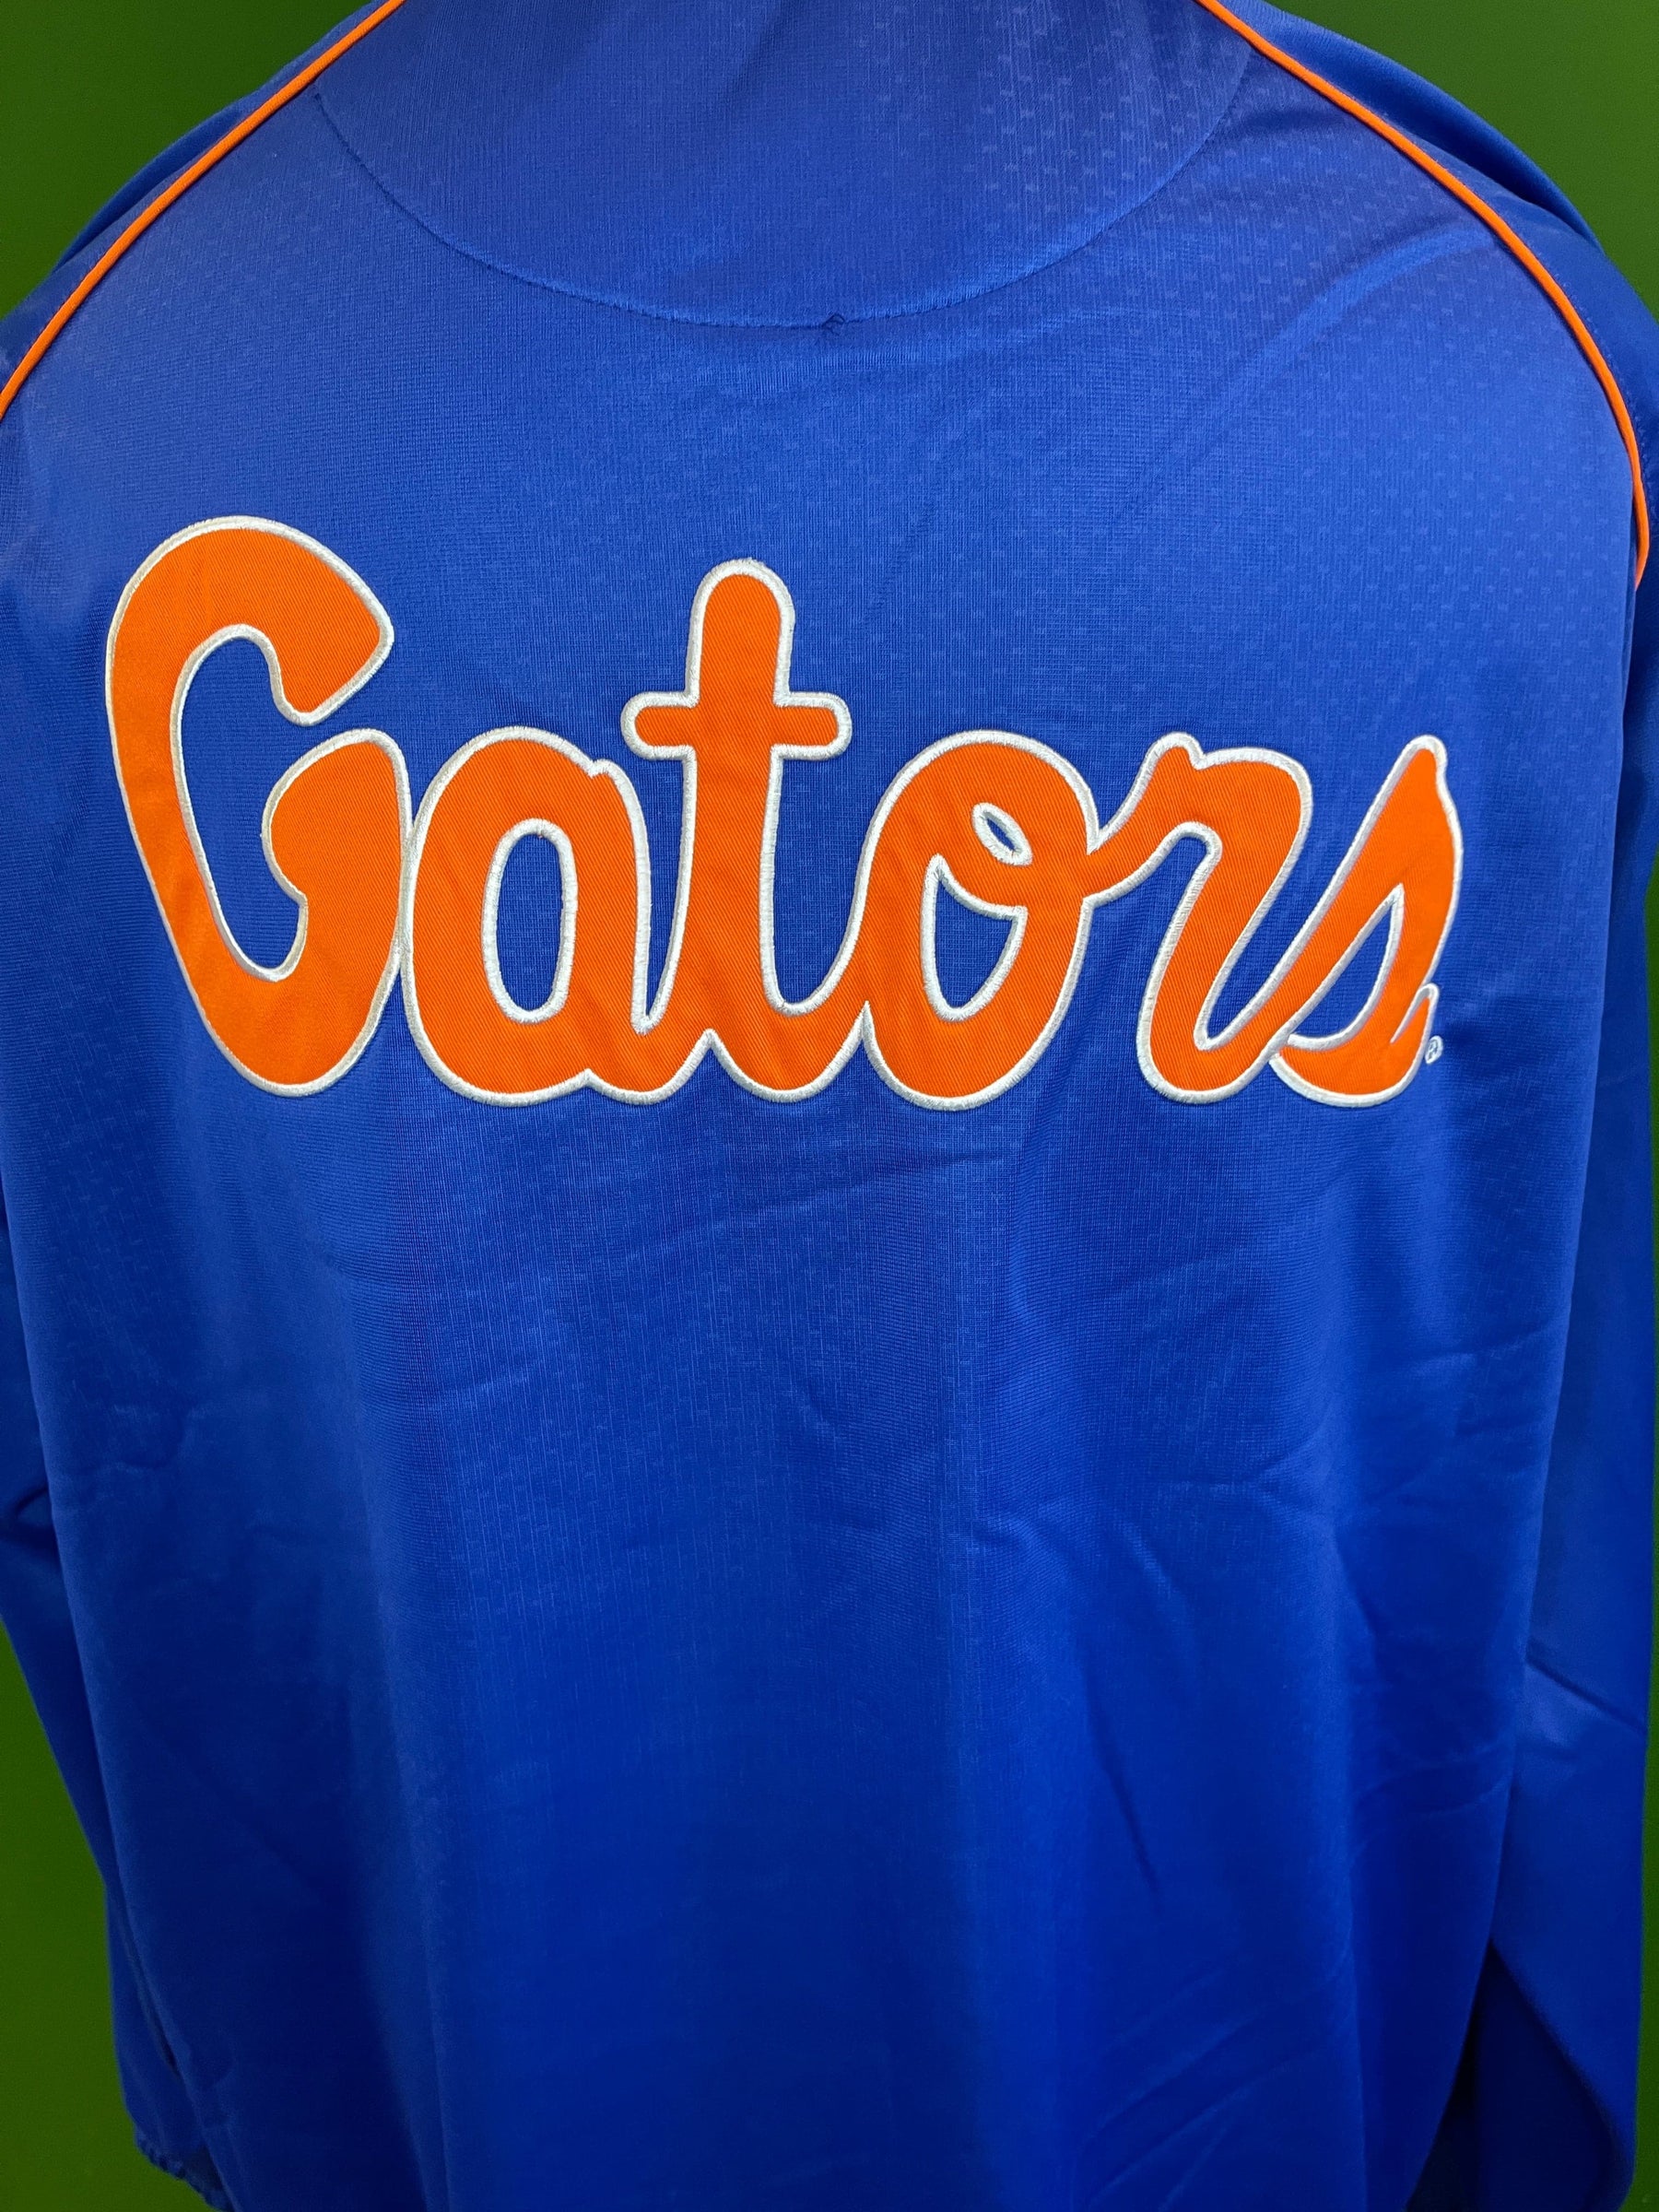 NCAA Florida Gators GIII Stitched Blue Full-Zip Jacket Men's 2X-Large